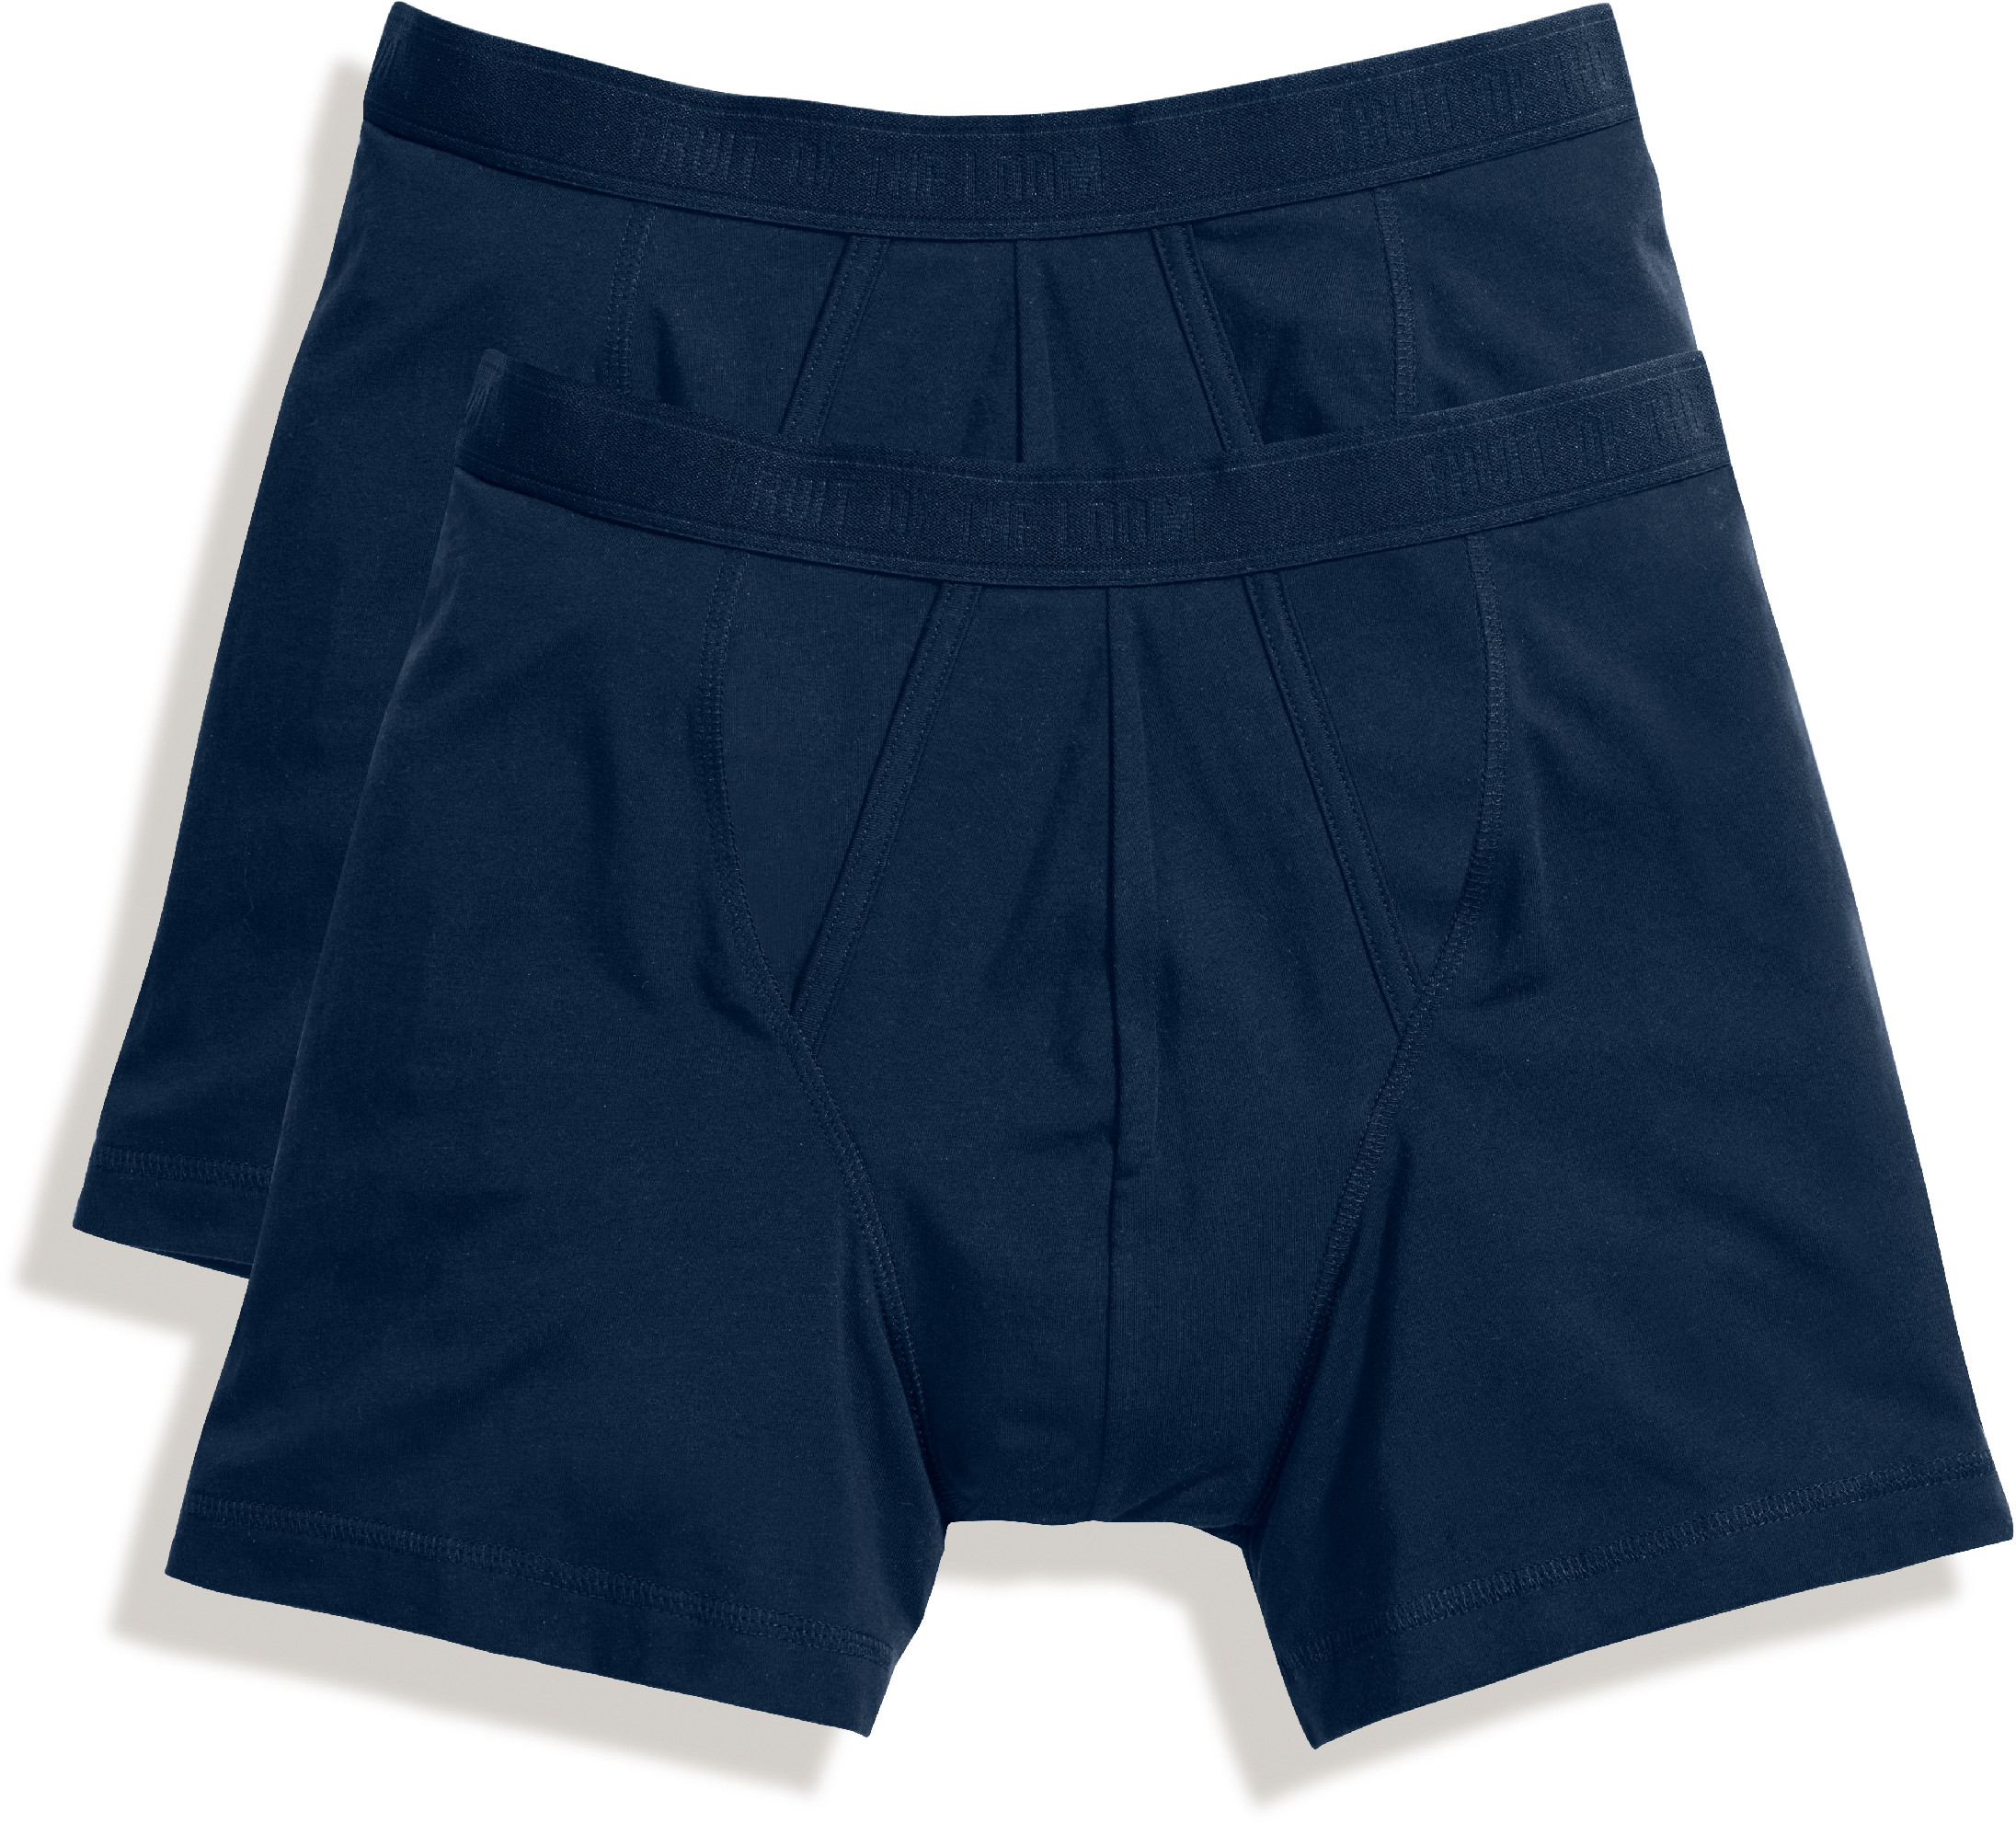 Pánské boxerky, balení po 2 ks Barva: underwear navy/underwear navy, Velikost: S